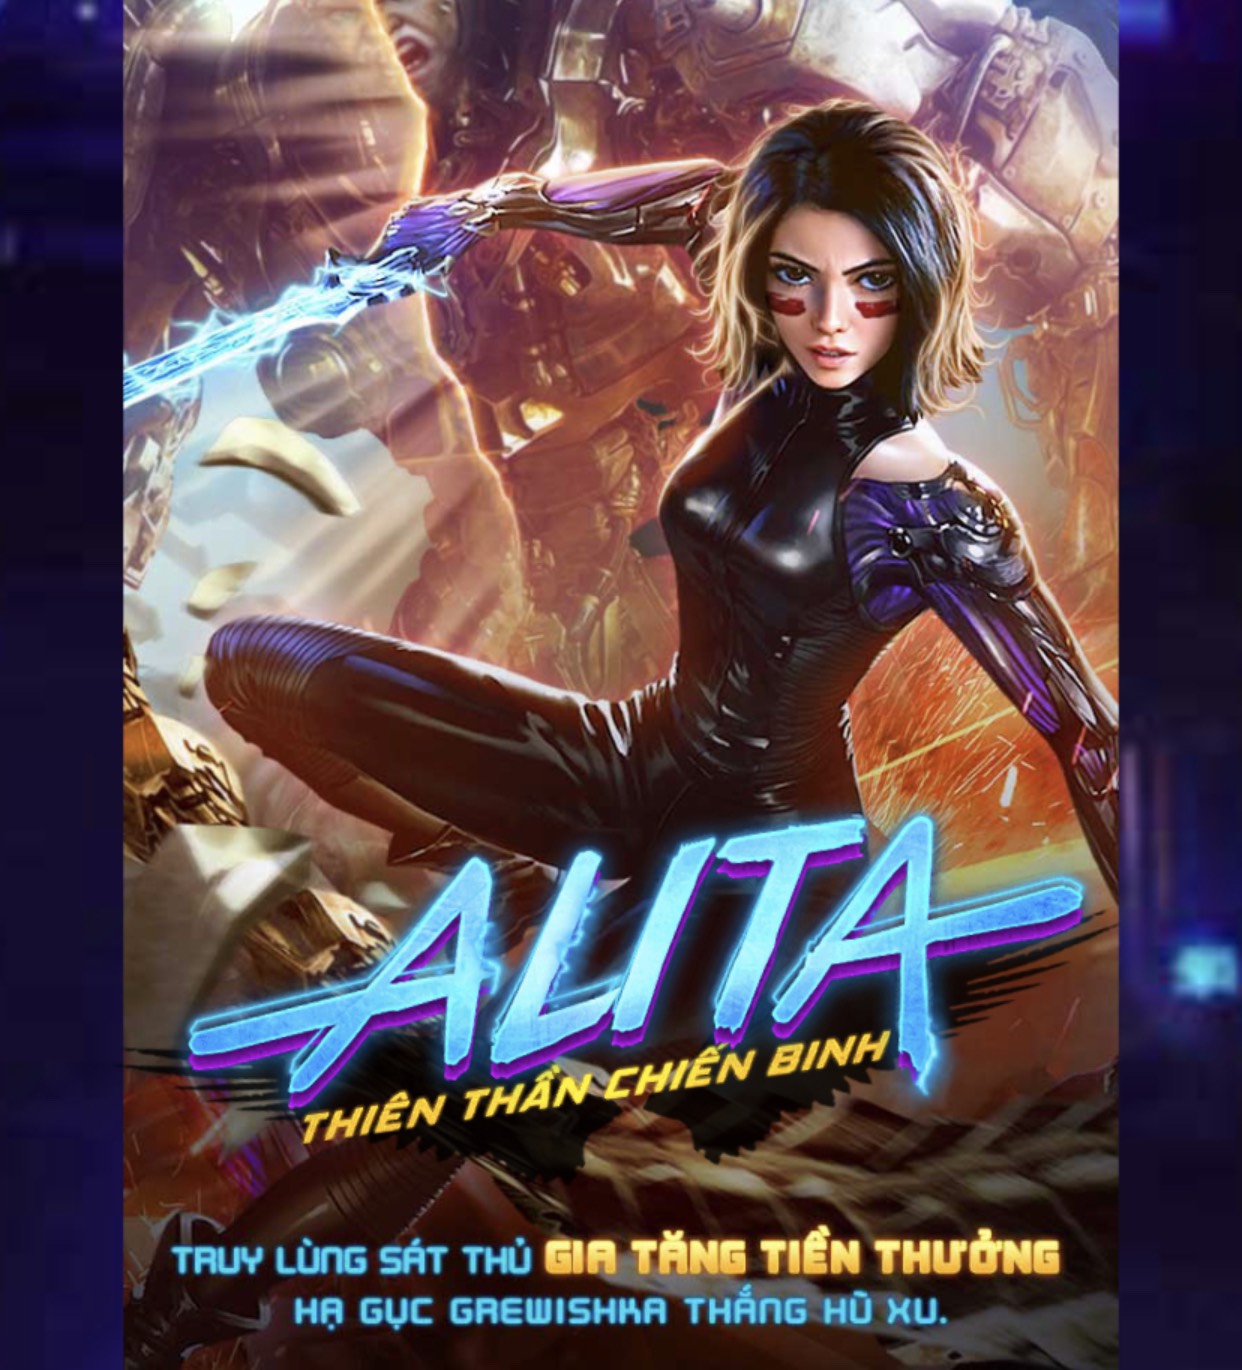 Cốt truyện thú vị của game nổ hũ Alita